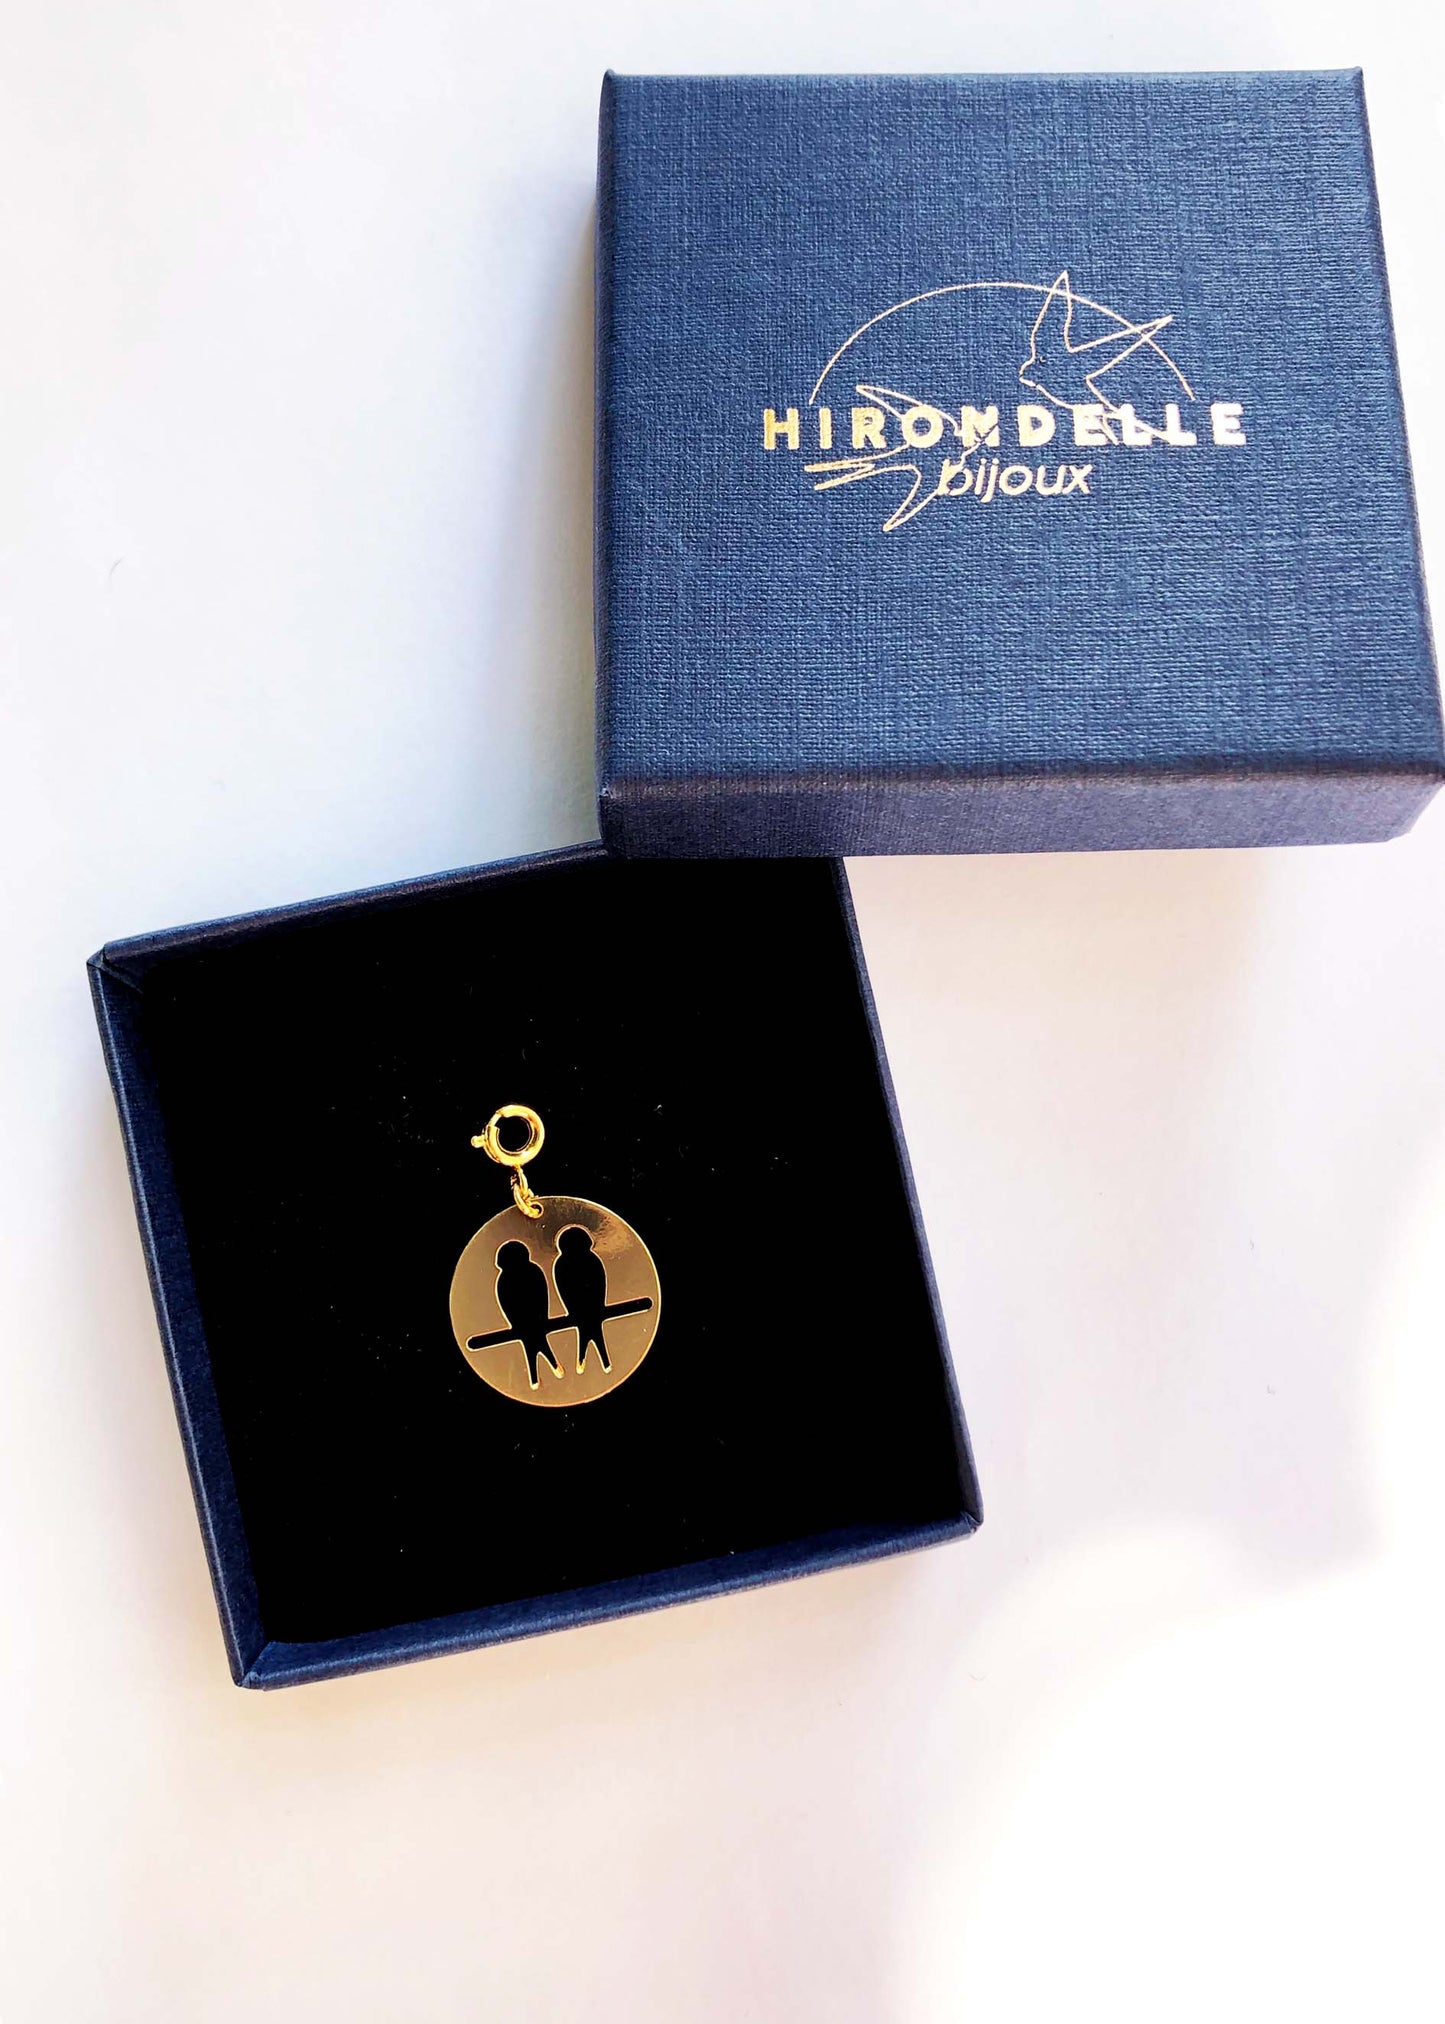 Médailles signes astrologiques - Hirondelle Bijoux